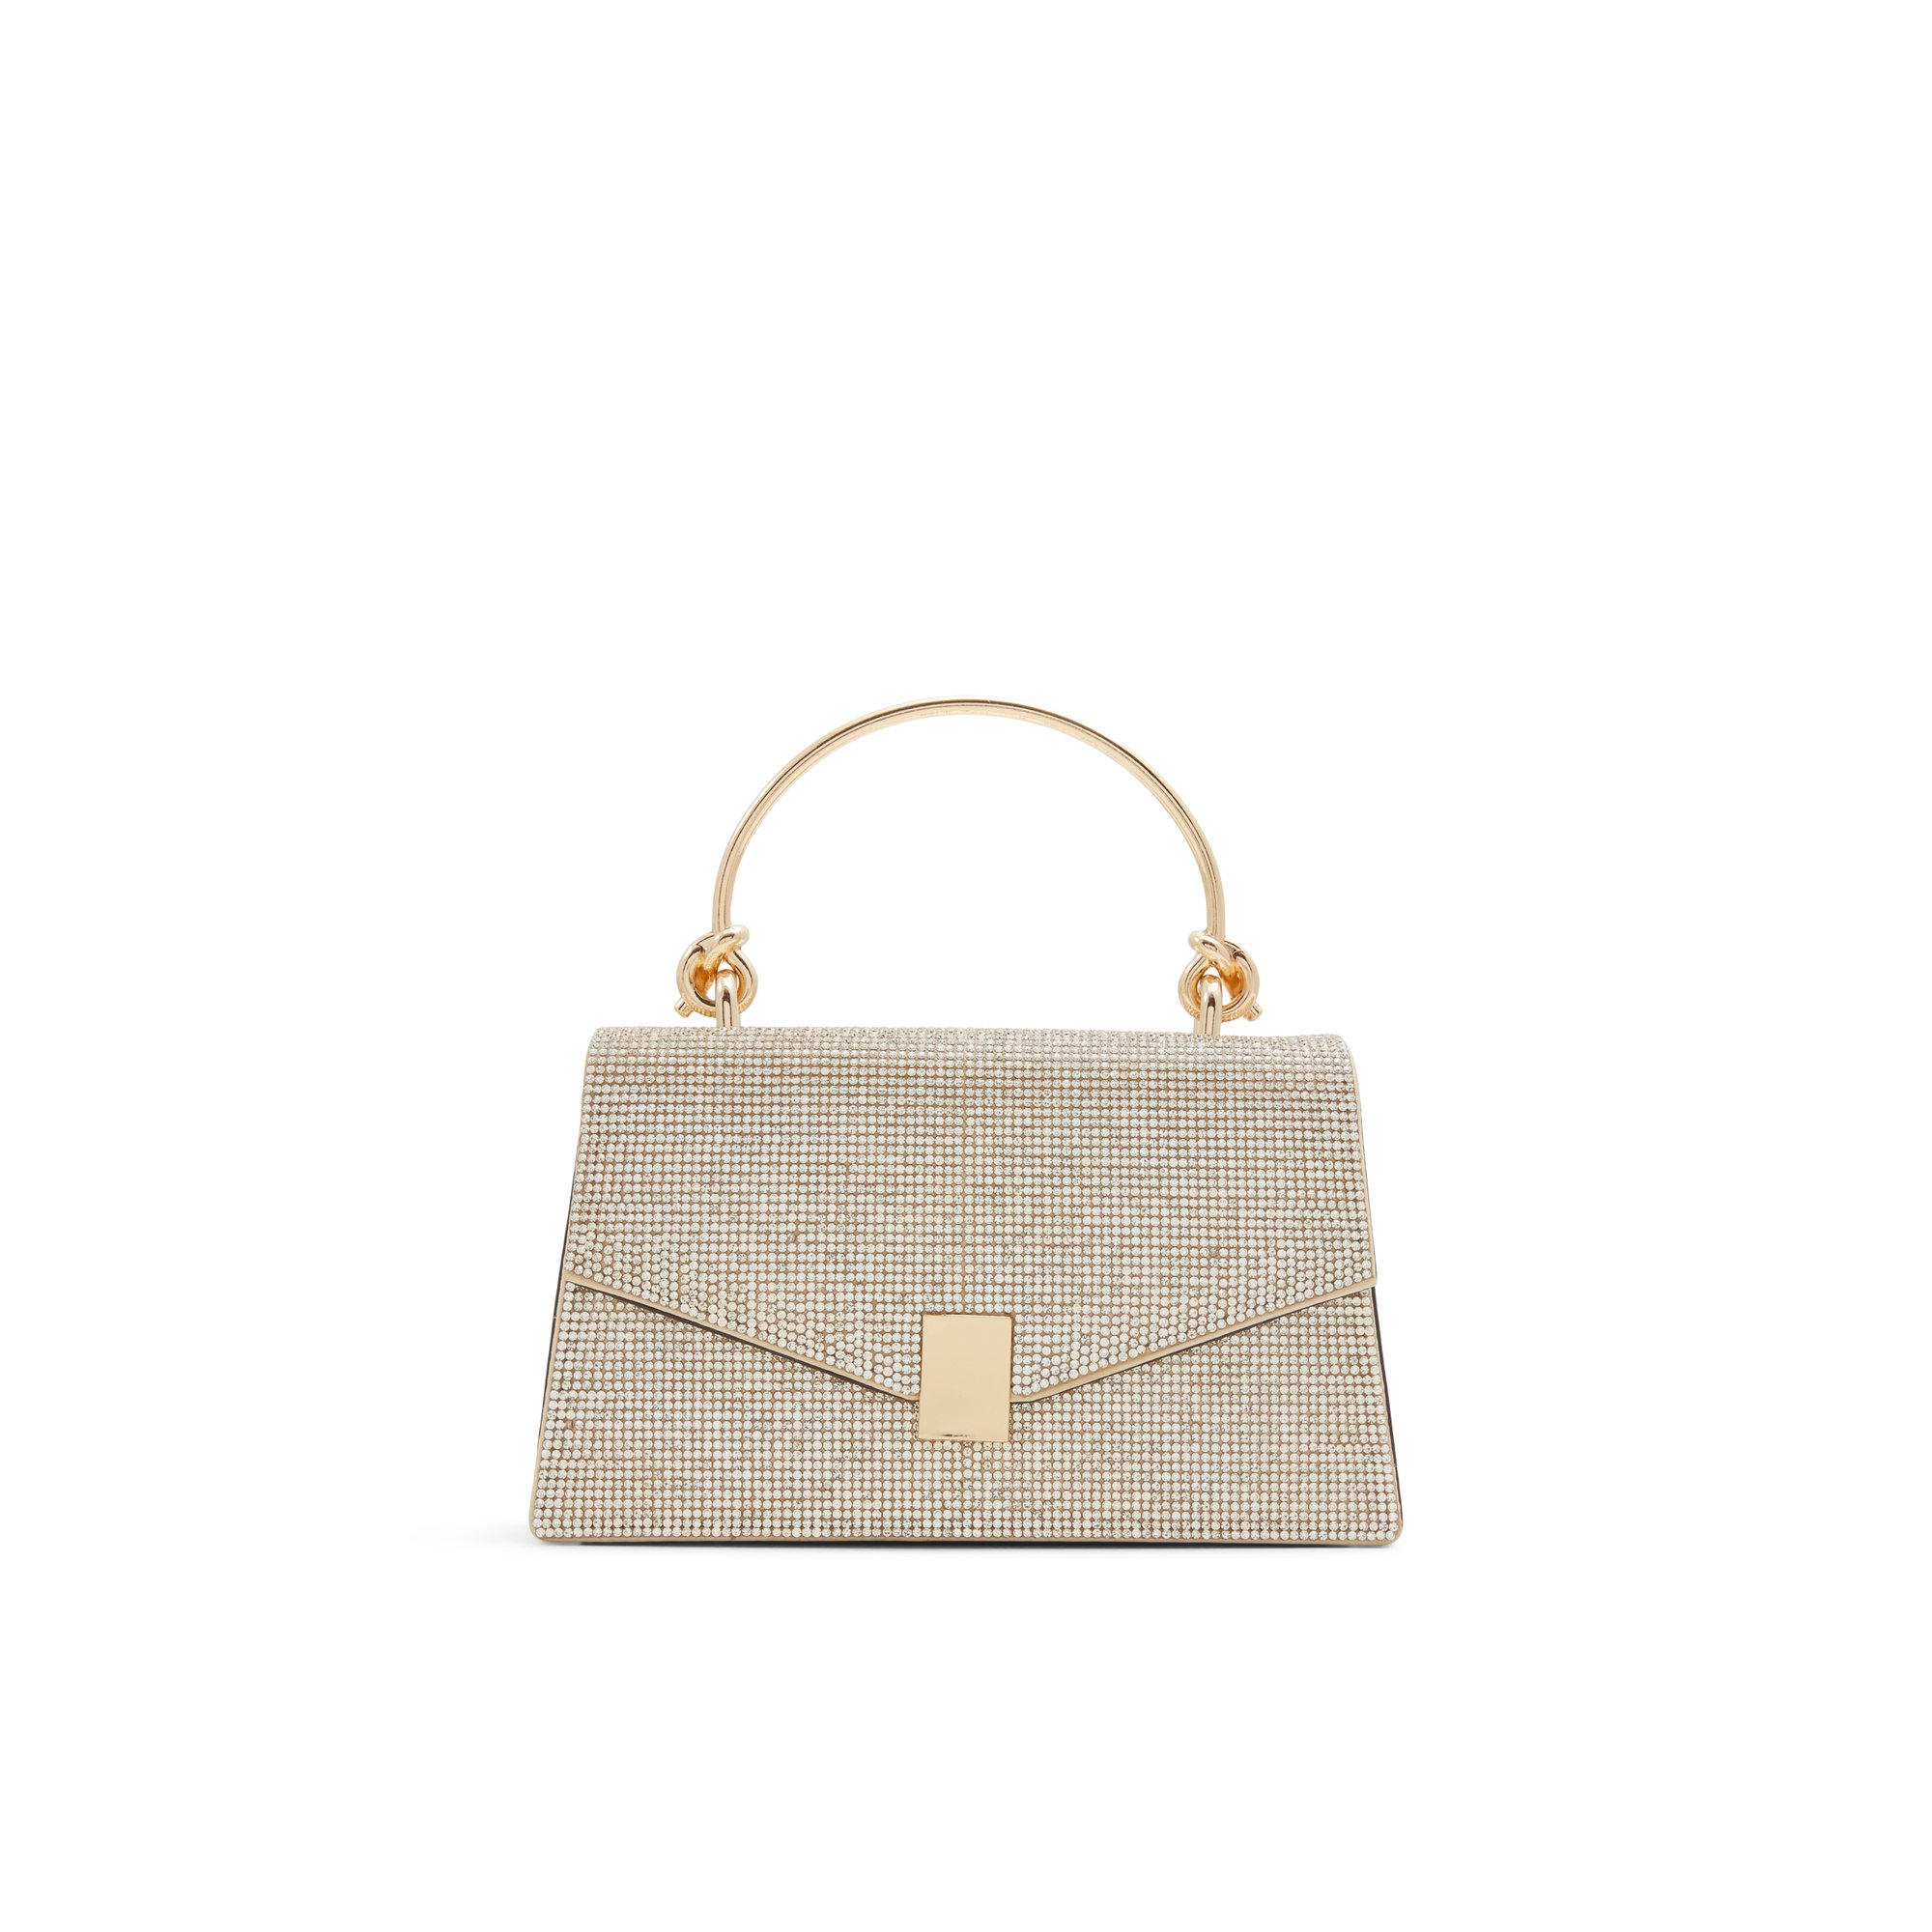 ALDO Miramax - Women's Top Handle Handbag - Gold